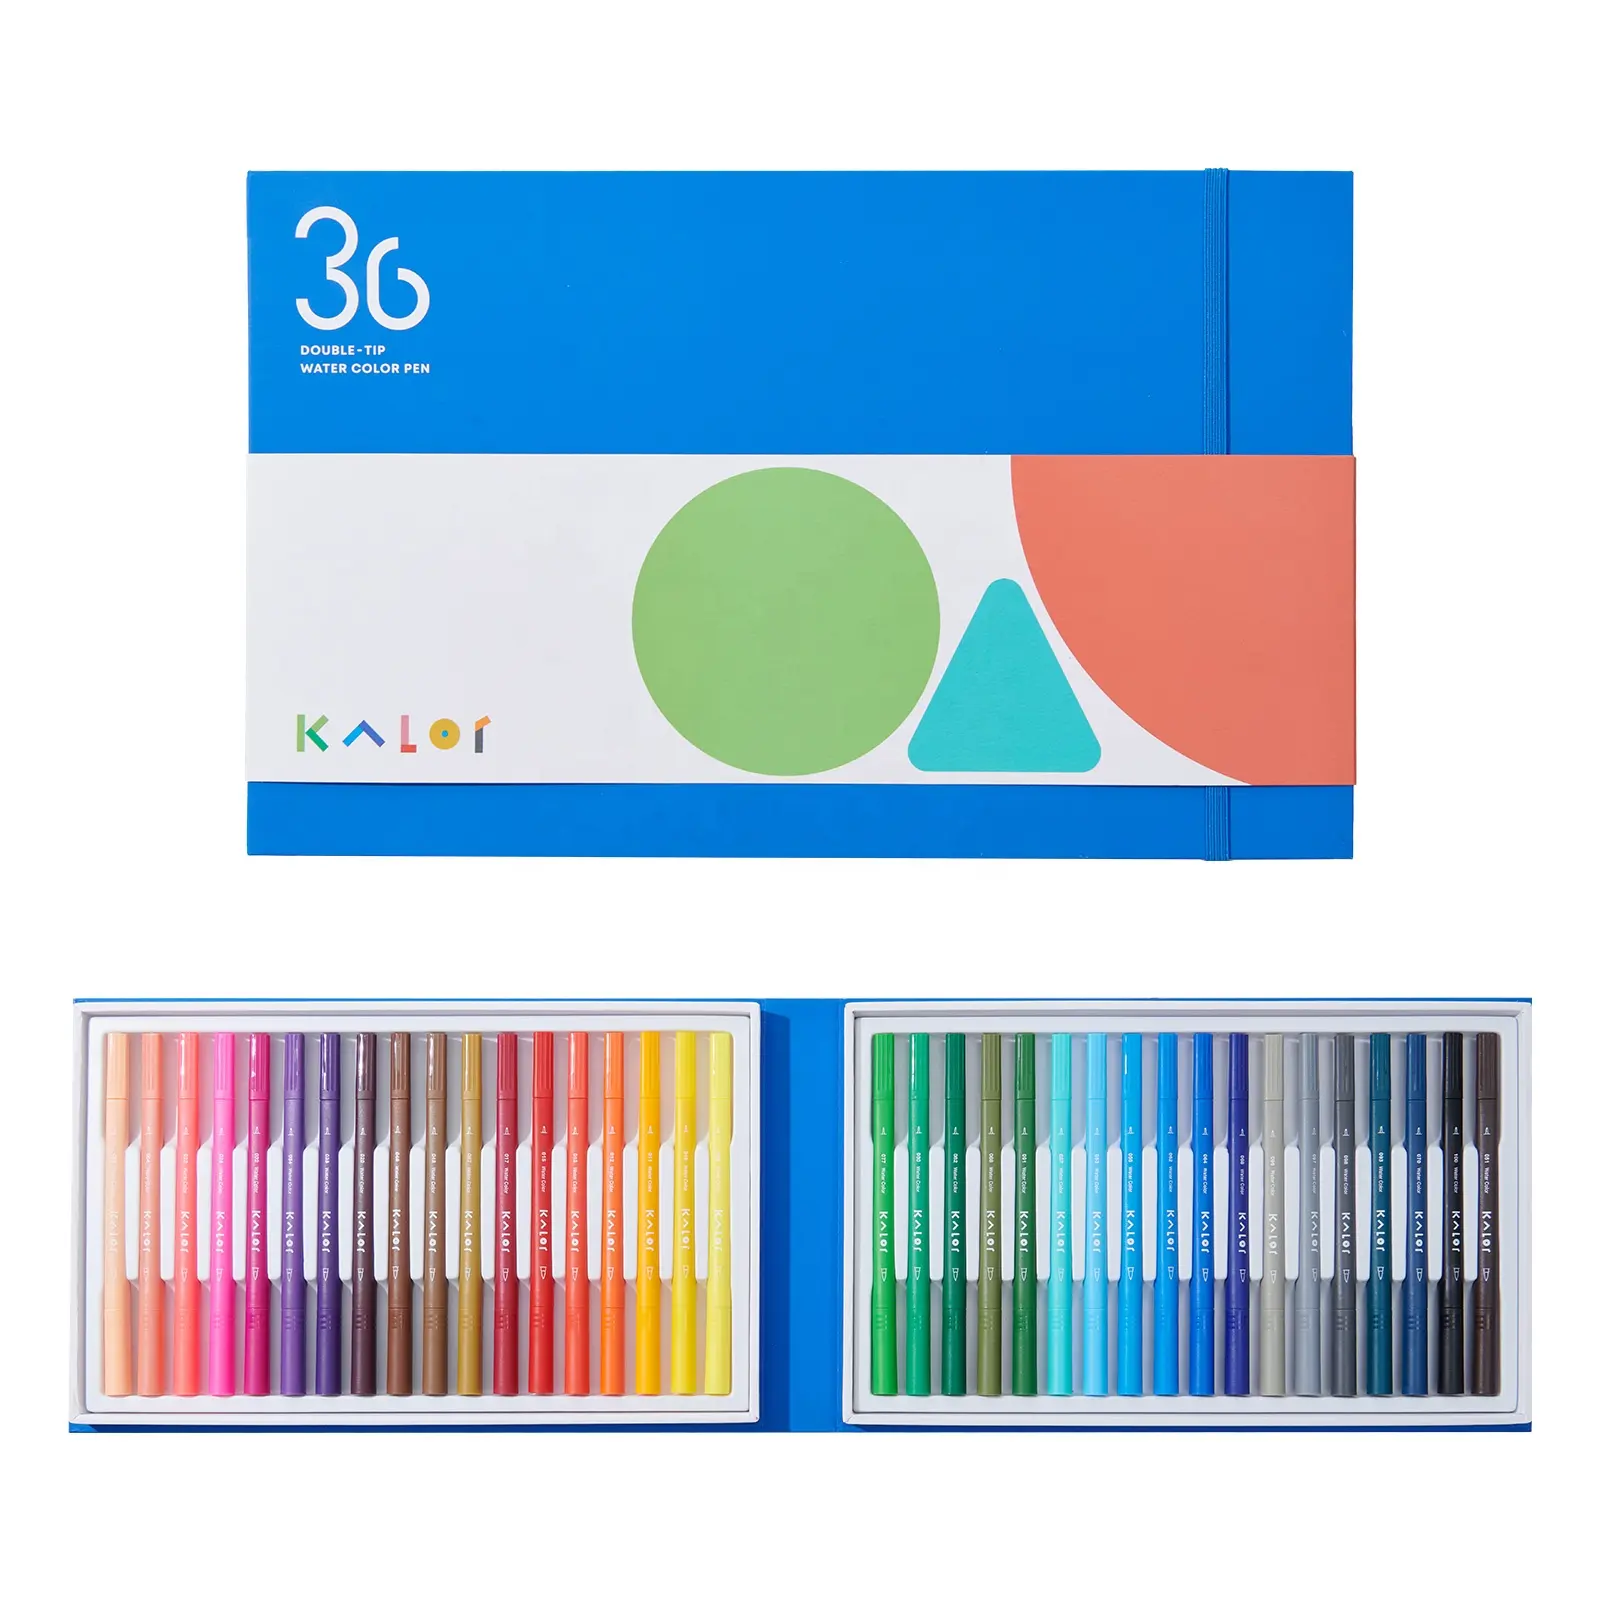 KACO KALOR-bolígrafos de doble punta para pintura, rotuladores artísticos de doble punta de 36 colores, tinta a base de agua lavable, juego de pinceles de acuarela, regalo